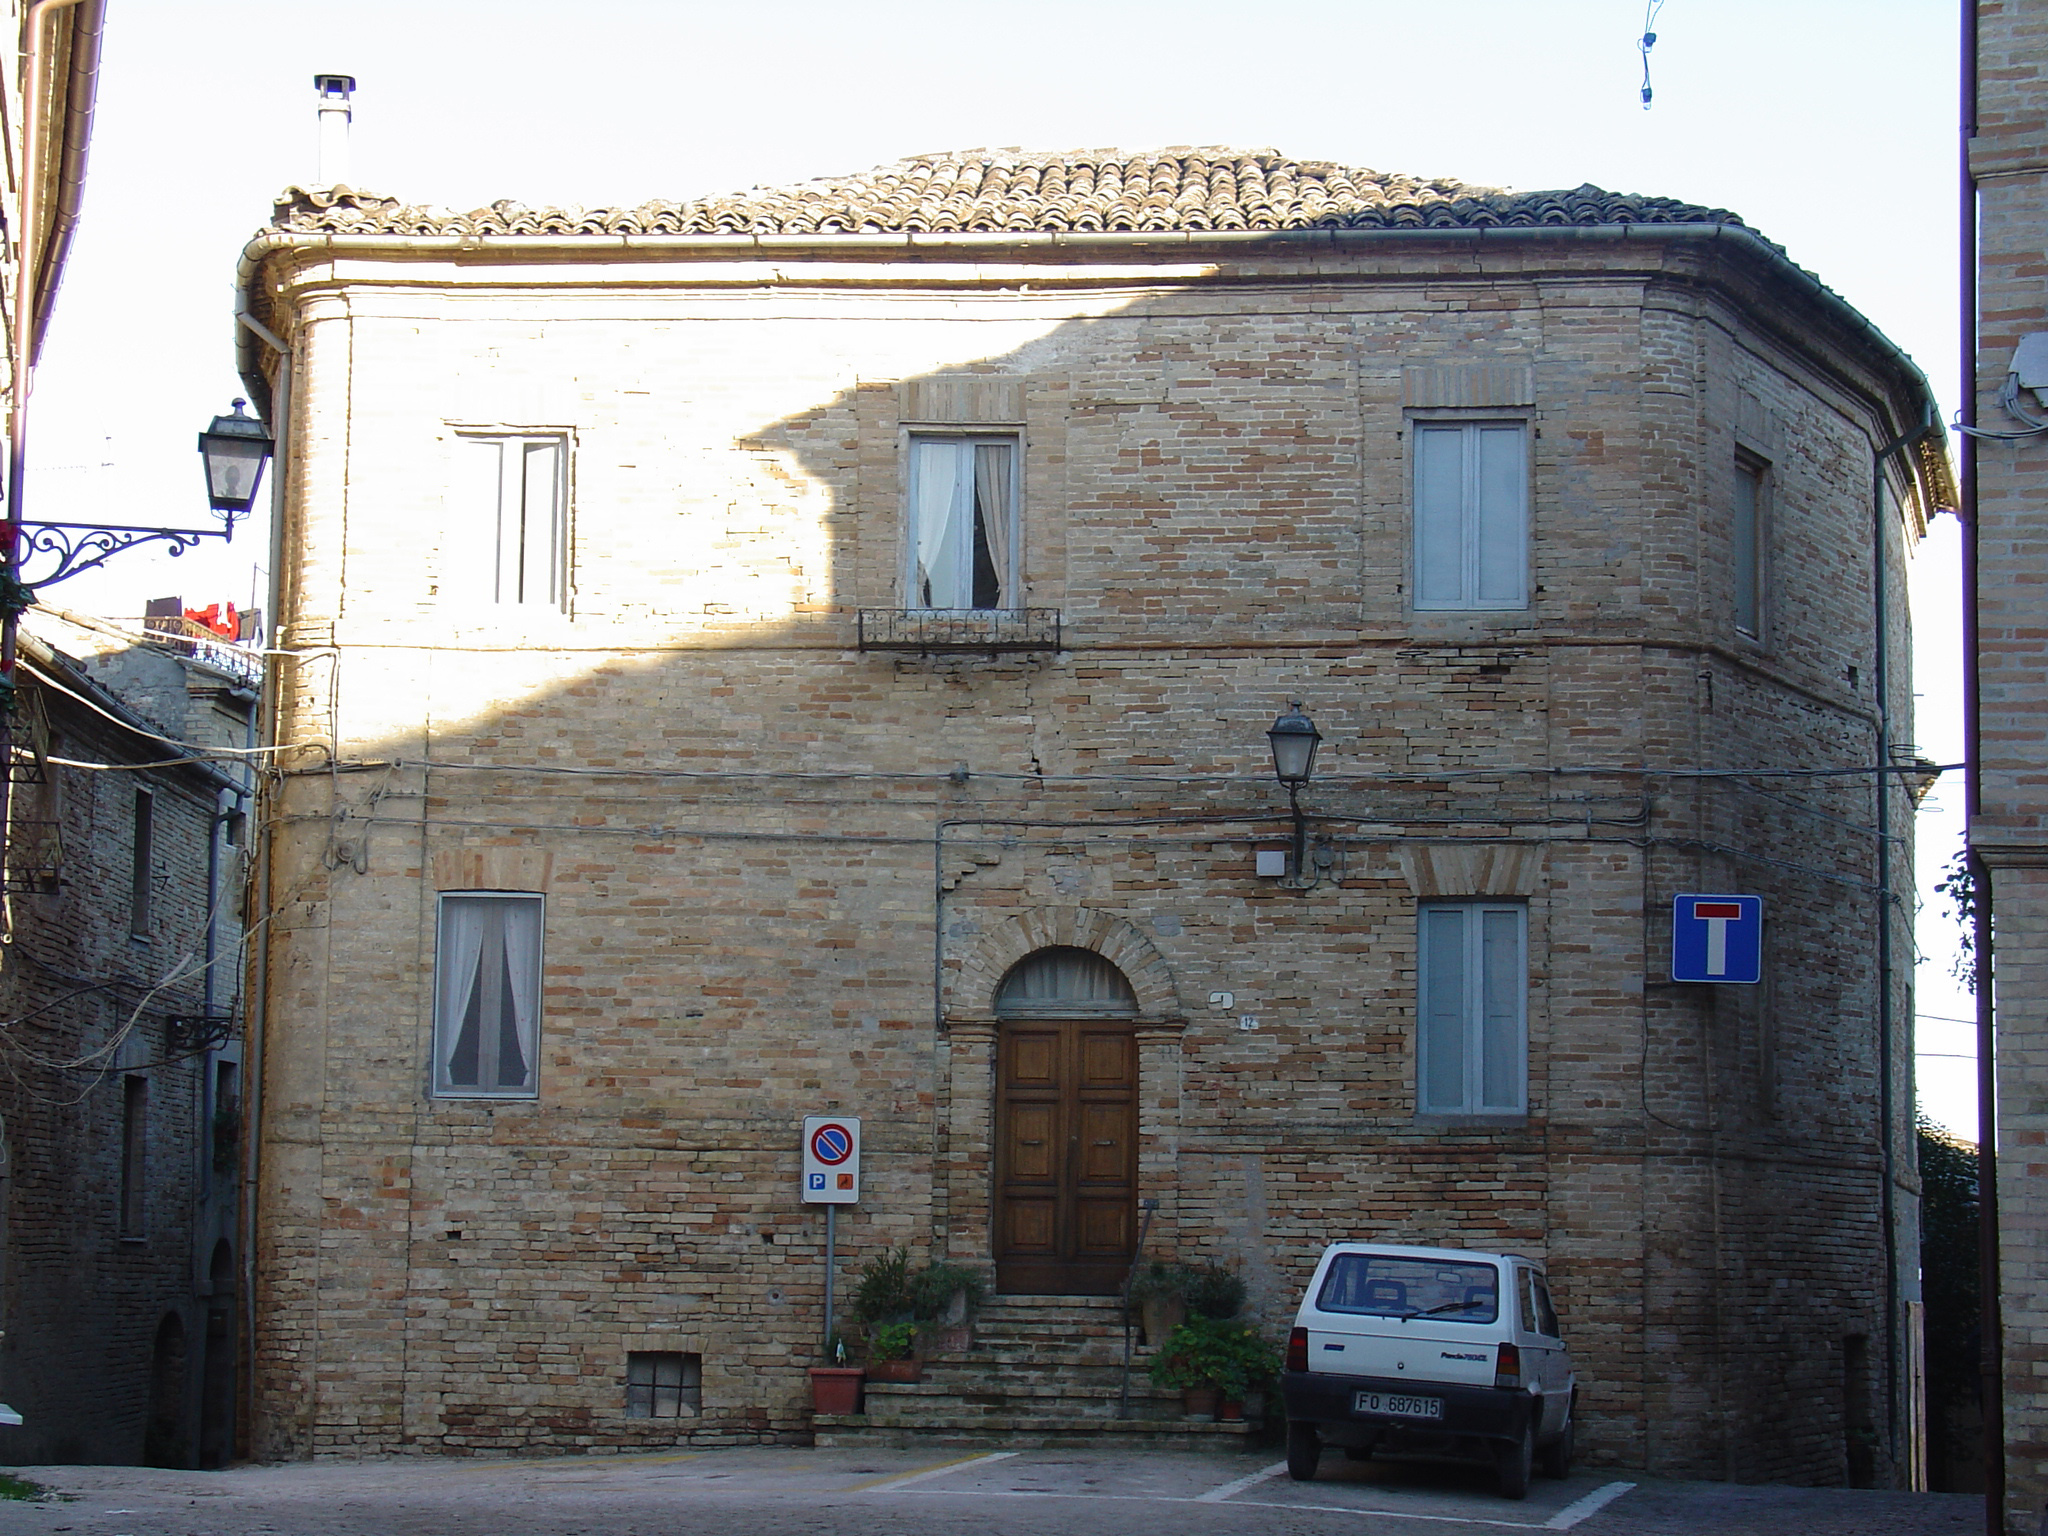 Palazzo Malaspina (palazzo, signorile) - Petritoli (AP) 